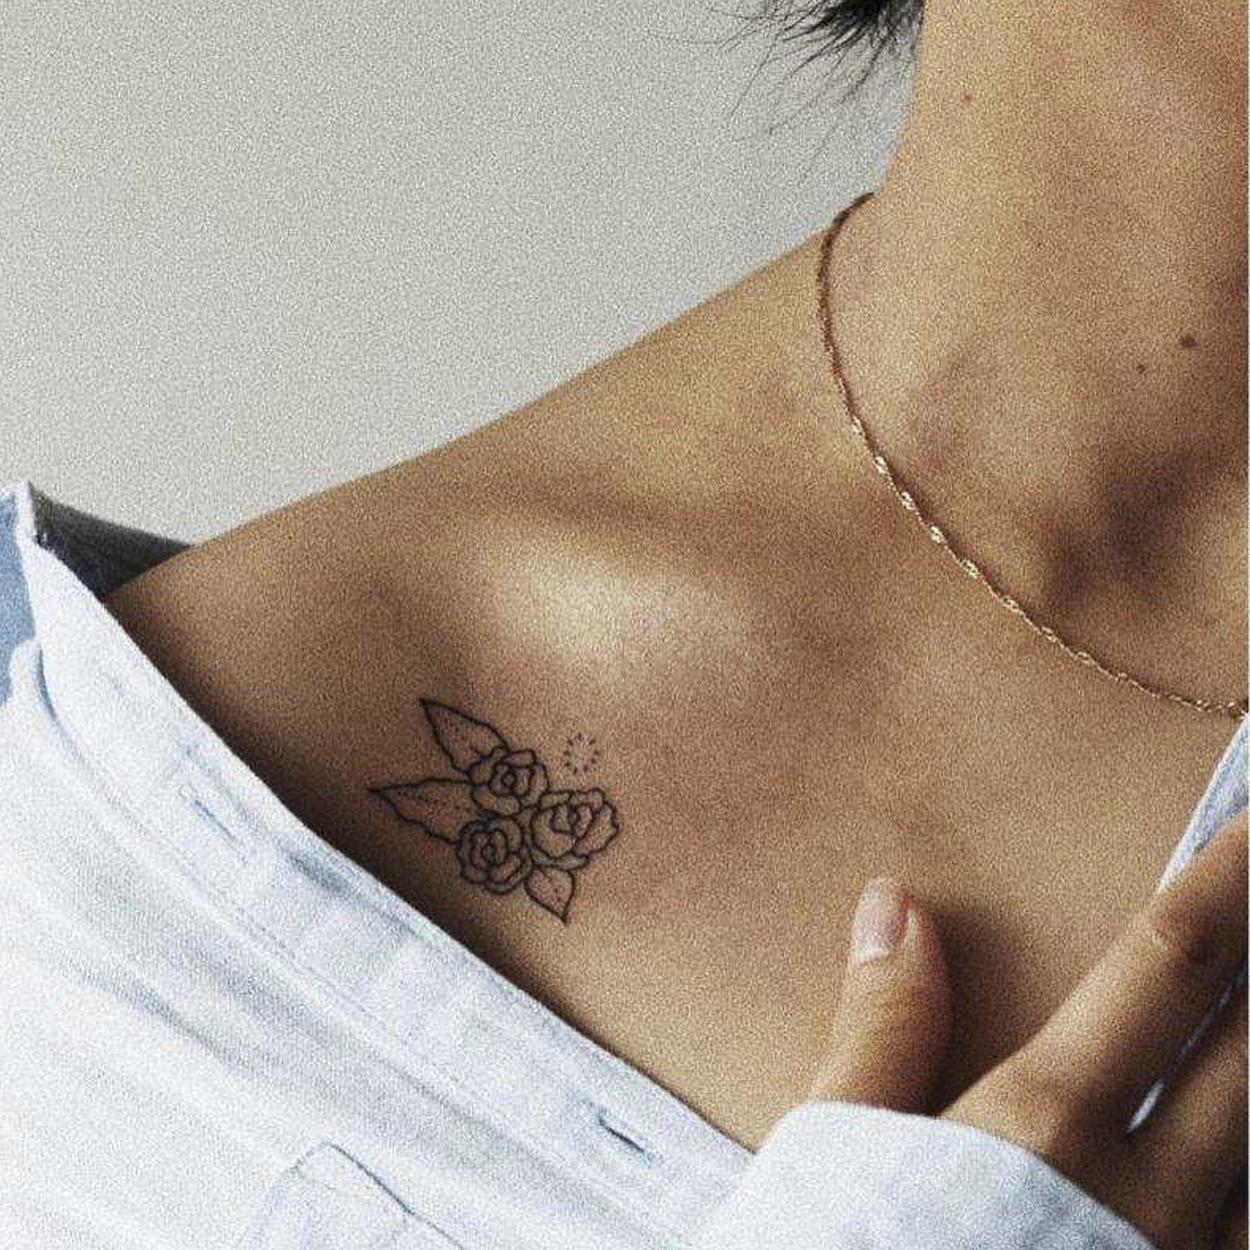 tattoo minimalista ombro